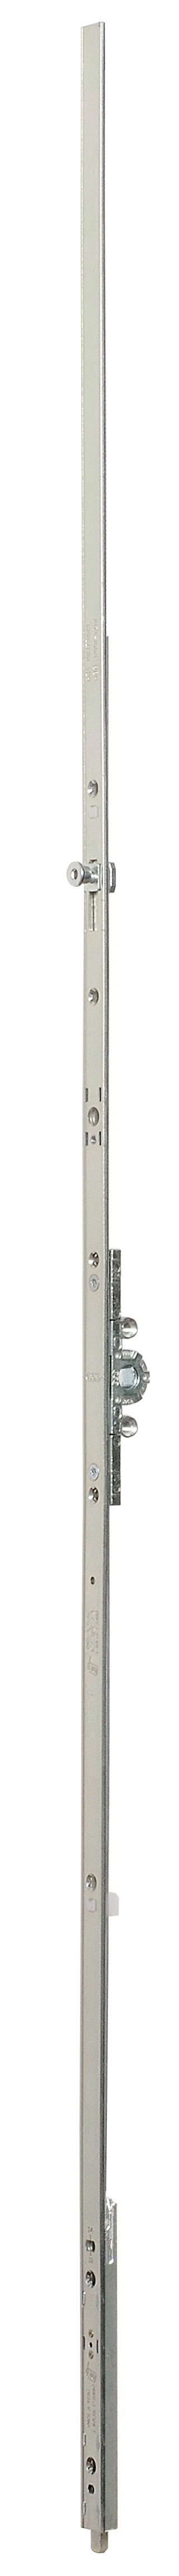 AGB -  Cremonese ARTECH anta a bandiera altezza maniglia fissa con puntale chiusura ad espansione per seconda anta - gr / dim. 07 - entrata 15 - alt. man. 1050 - lbb/hbb 1600 - 1810